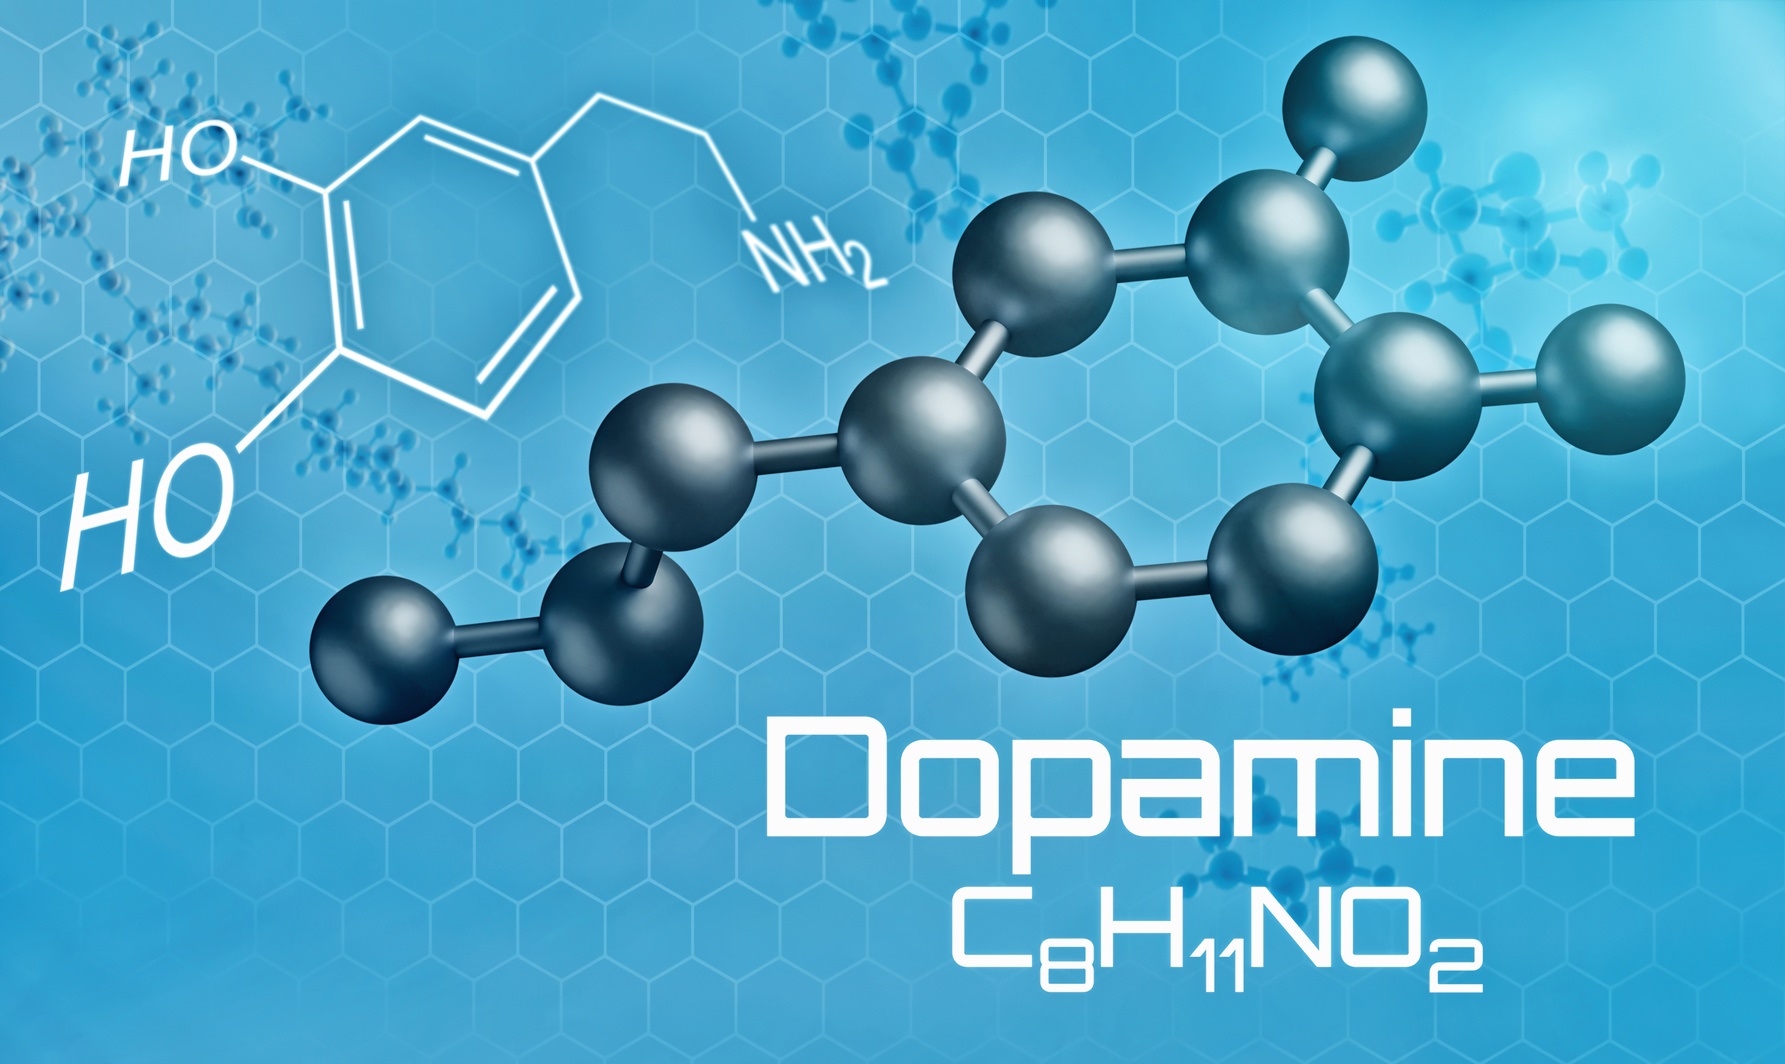 La dopamine est le principal neurotransmetteur impliqué dans le circuit de la récompense. © Zerbor, Fotolia